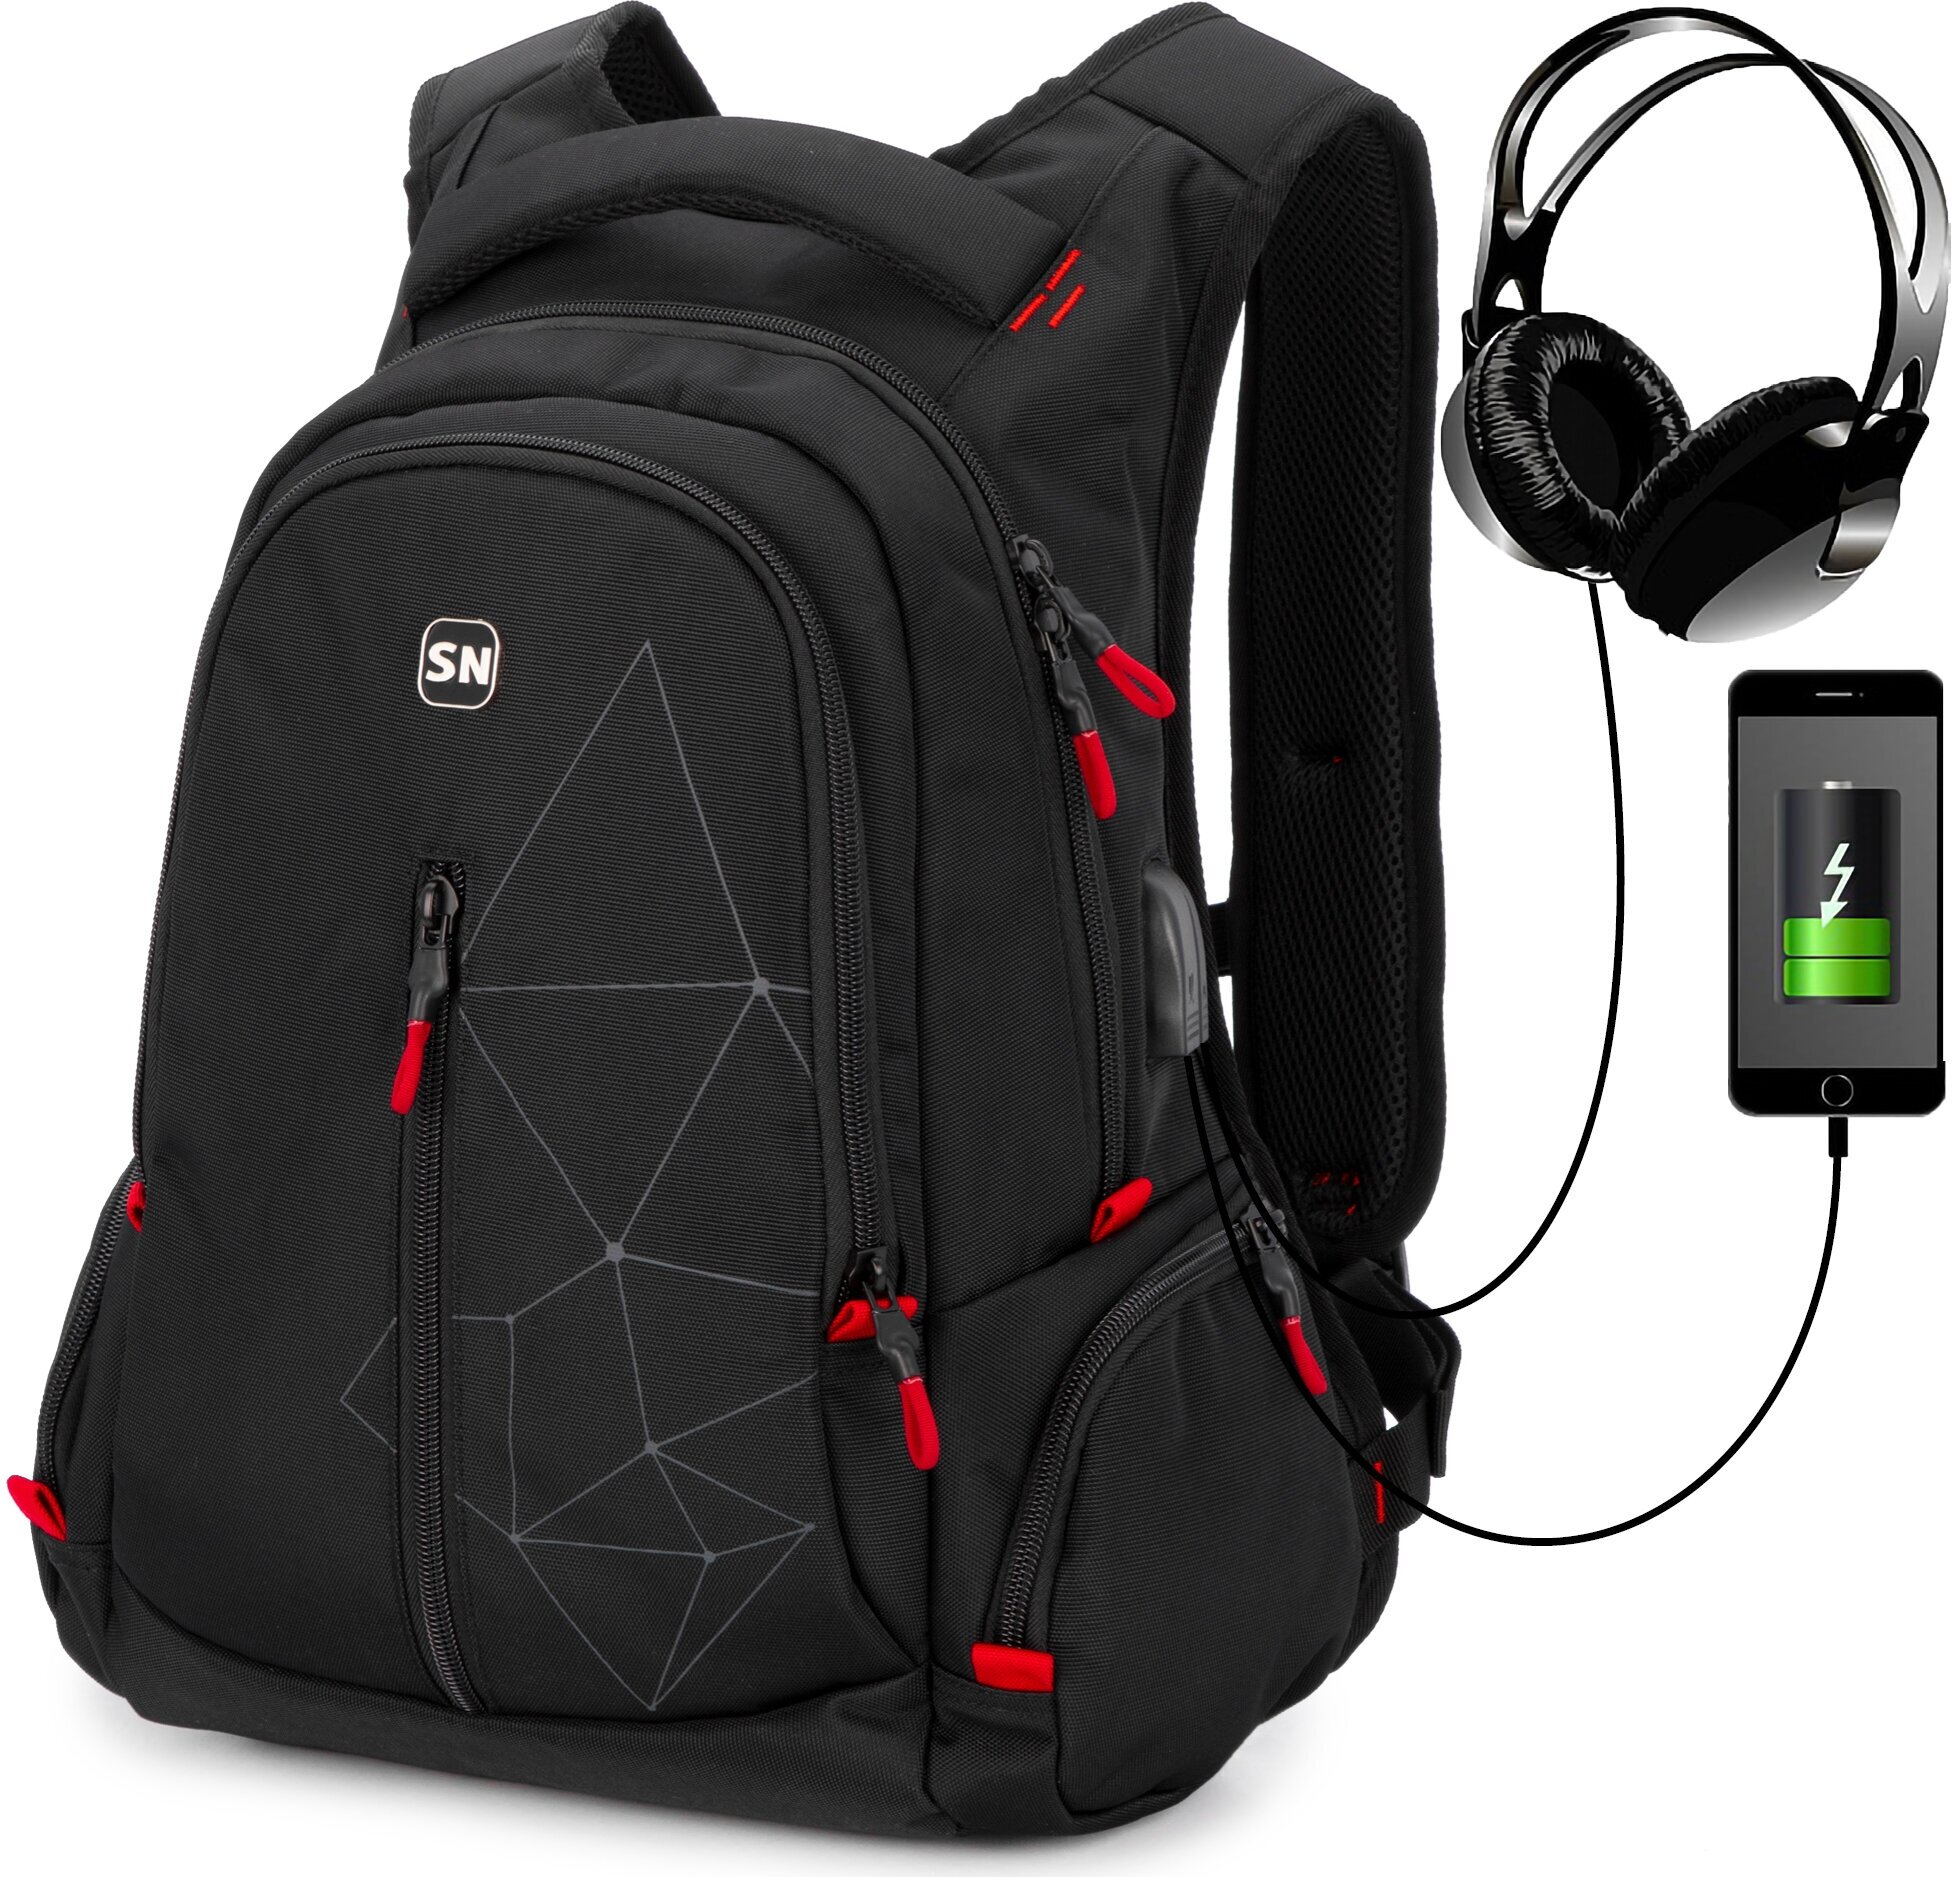 Рюкзак школьный для подростка, черный городской для мальчика/девочки, с анатомической спинкой и USB-слотом, 20 л, SkyName (СкайНейм)